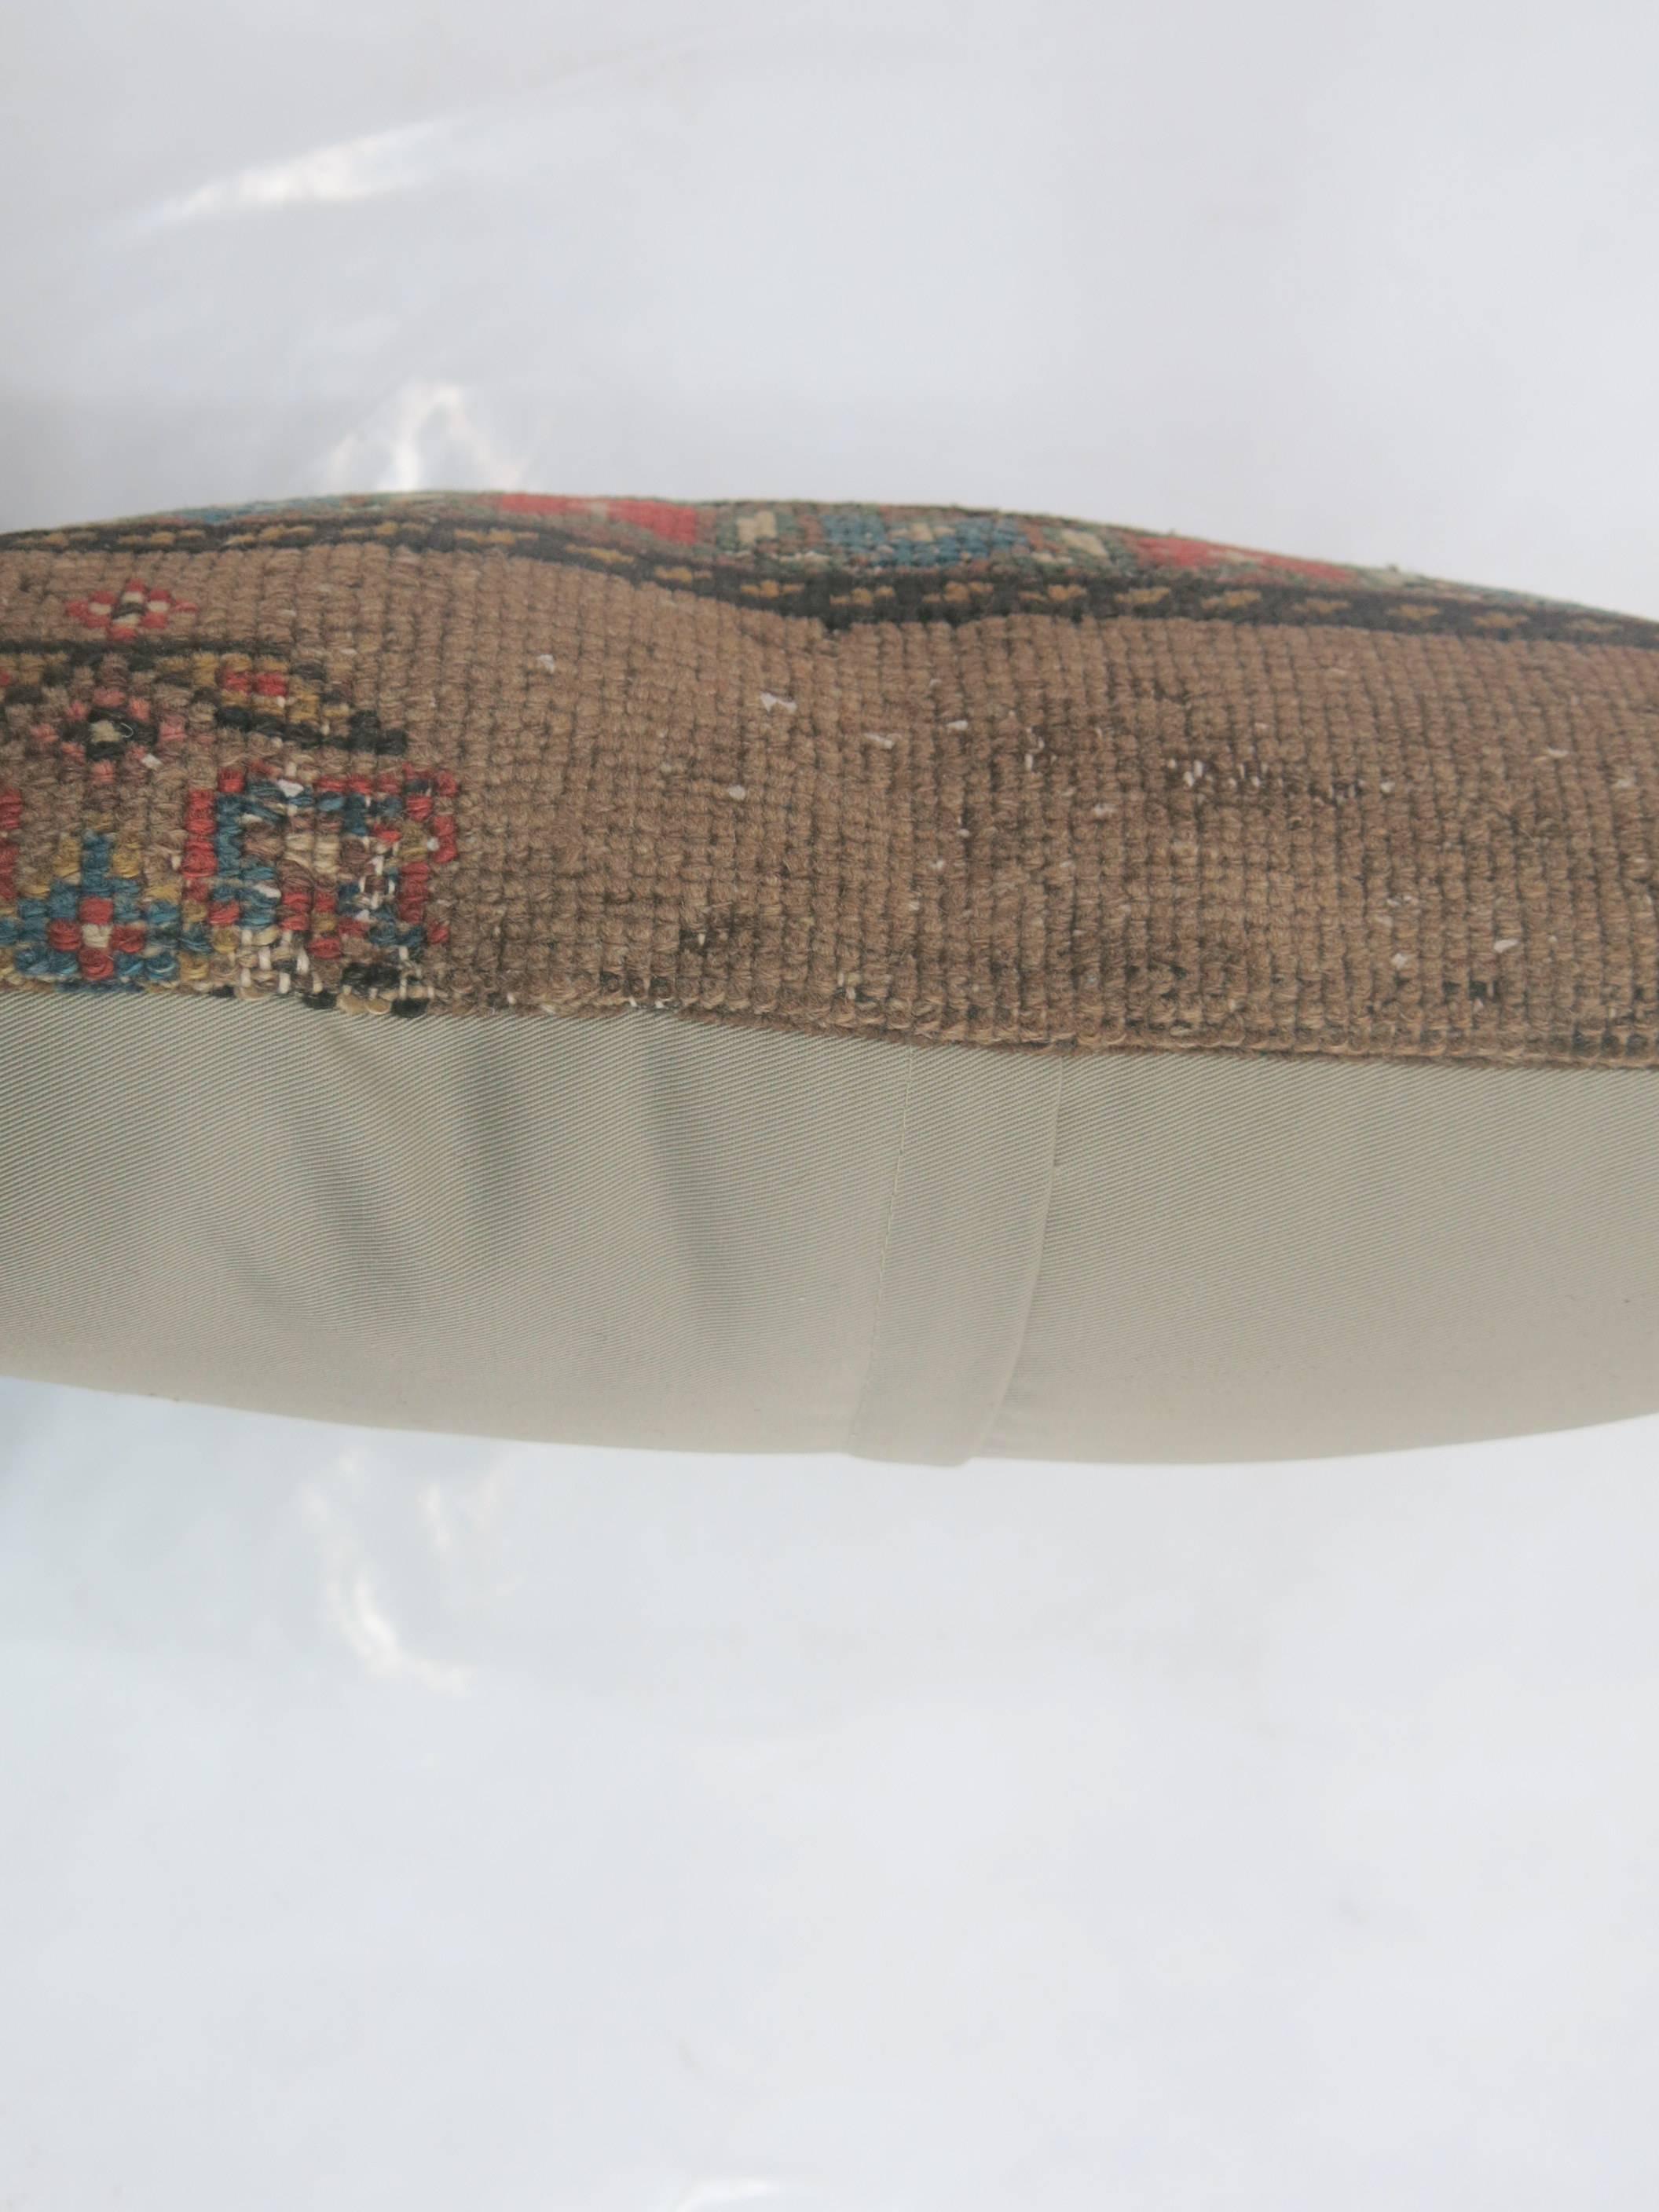 Oreiller fabriqué à partir d'un ancien tapis persan Serab du 19e siècle avec un dos en coton. Fermeture à glissière.

17'' x 20'